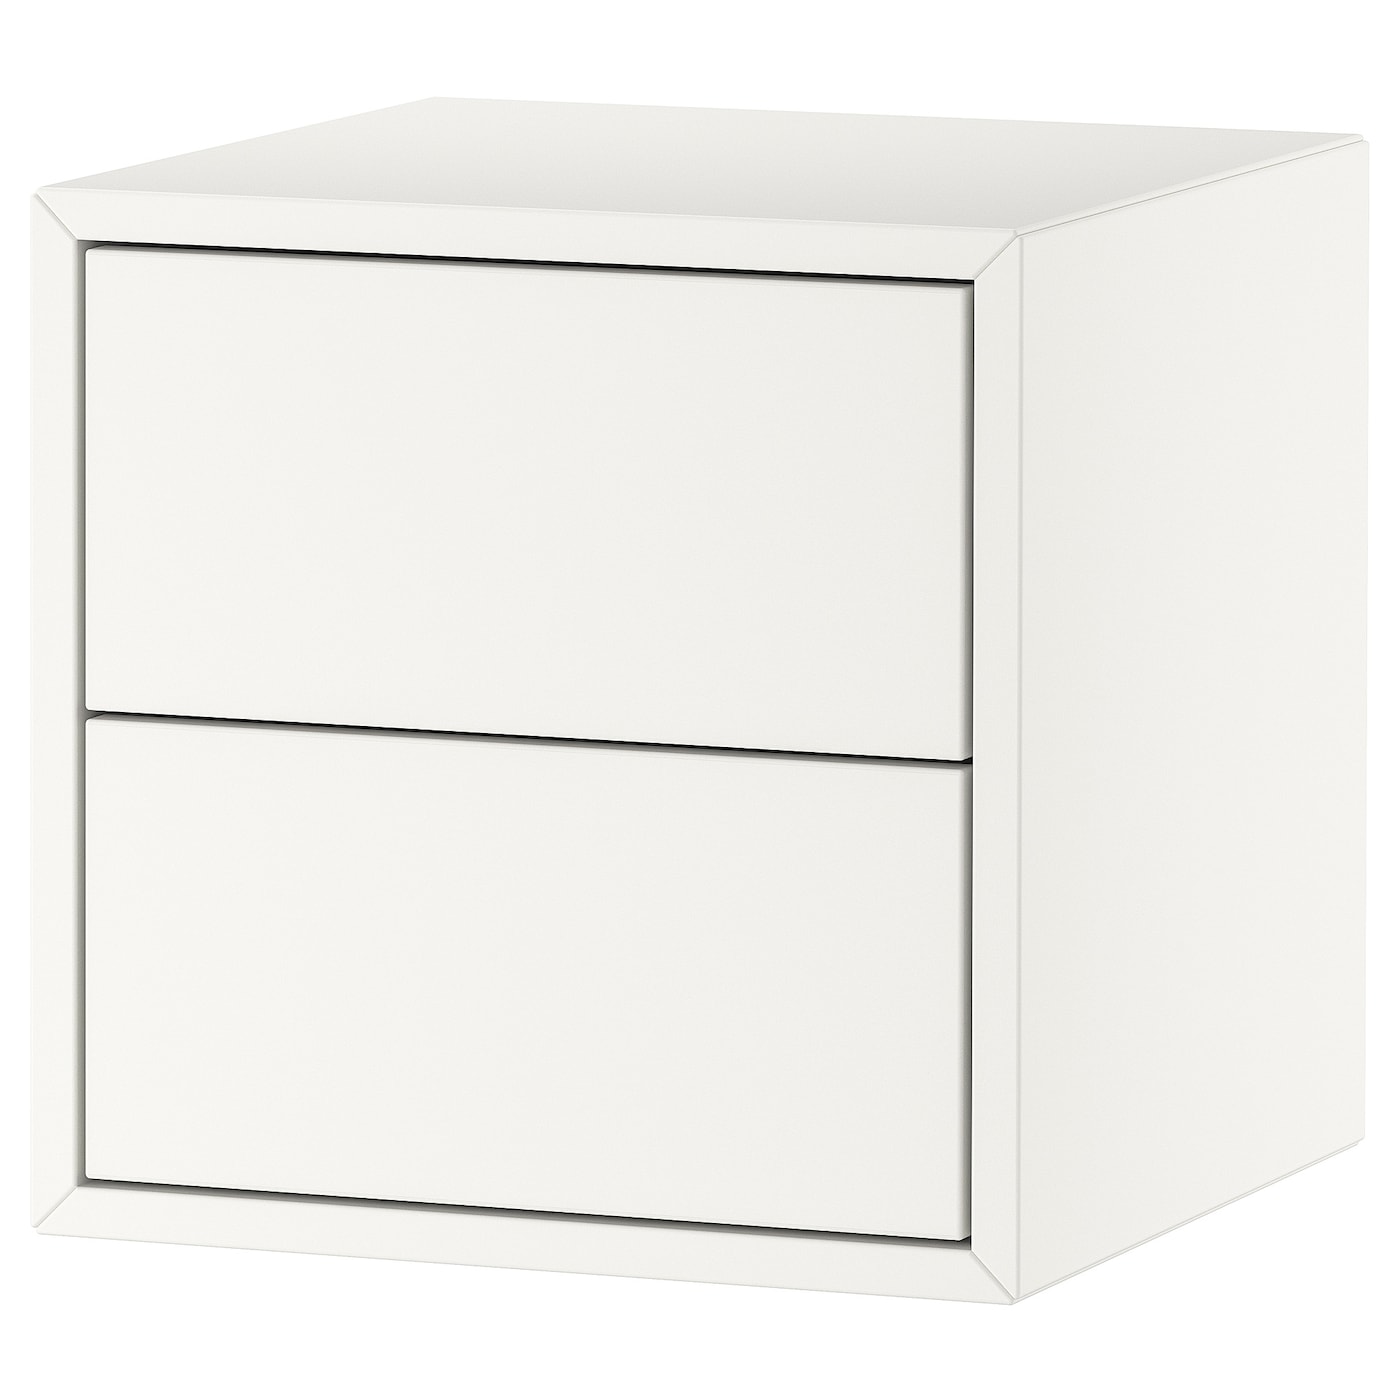 Стеллаж настенный - IKEA EKET, 35x35x35 см, белый, ЭКЕТ ИКЕА